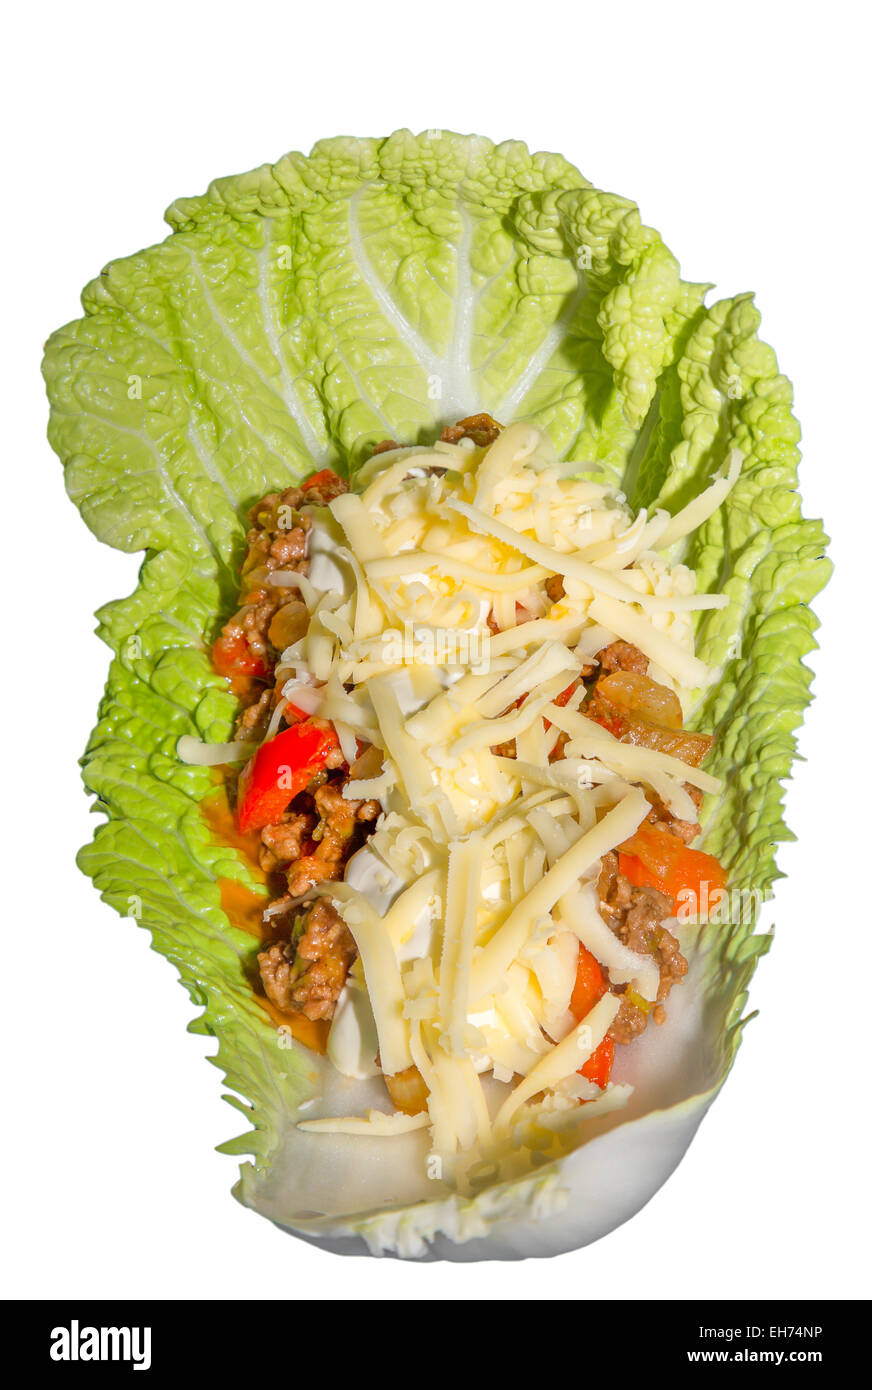 Immagine di una foglia di insalata con un impasto di carne con panna acida e formaggio Foto Stock